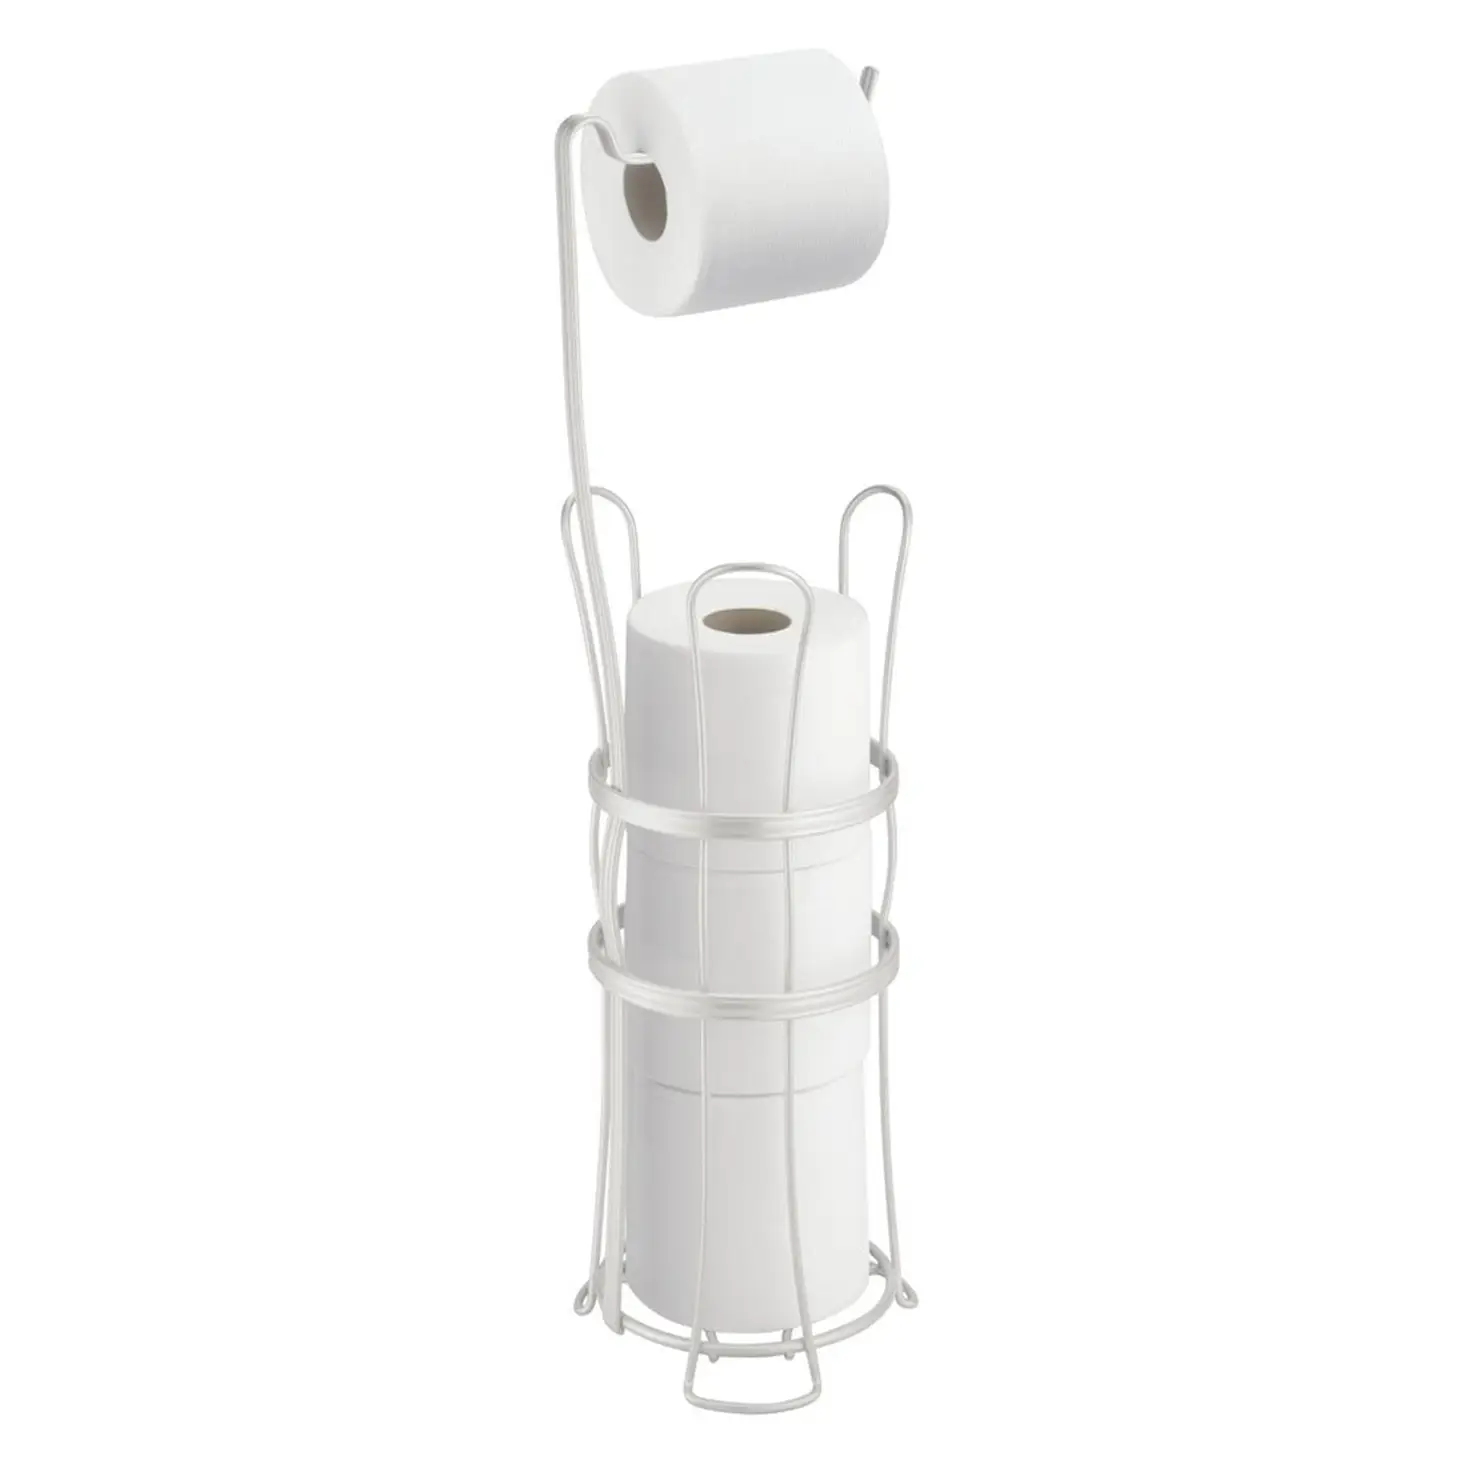 https://shopemco.com/cdn/shop/products/buy-idesign-york-lyra-roll-reserve-plus-toilet-paper-holder-pearl-white-62574-misc-111.webp?v=1668765898&width=1946